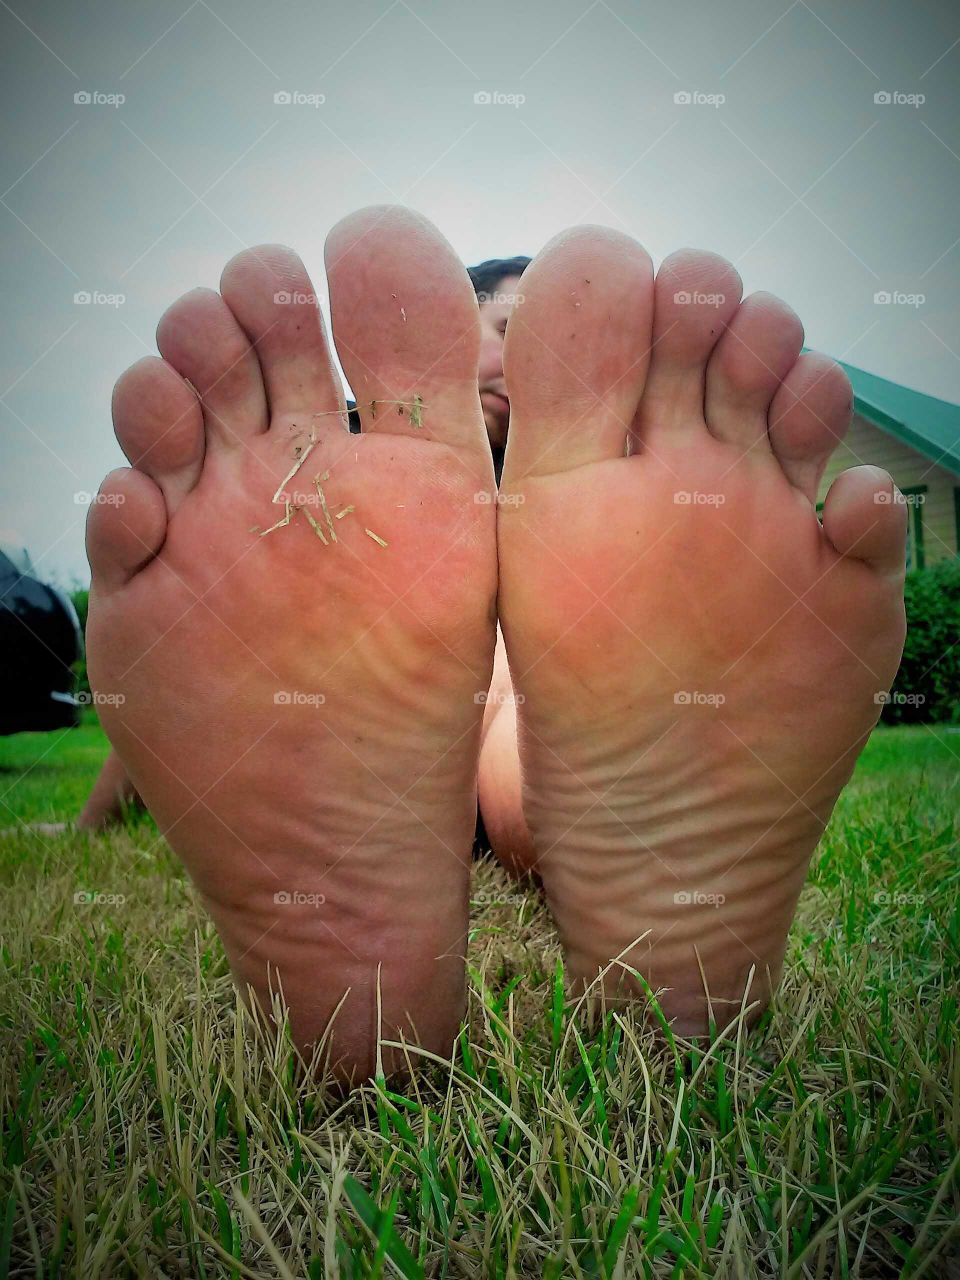 foot soles relaxing